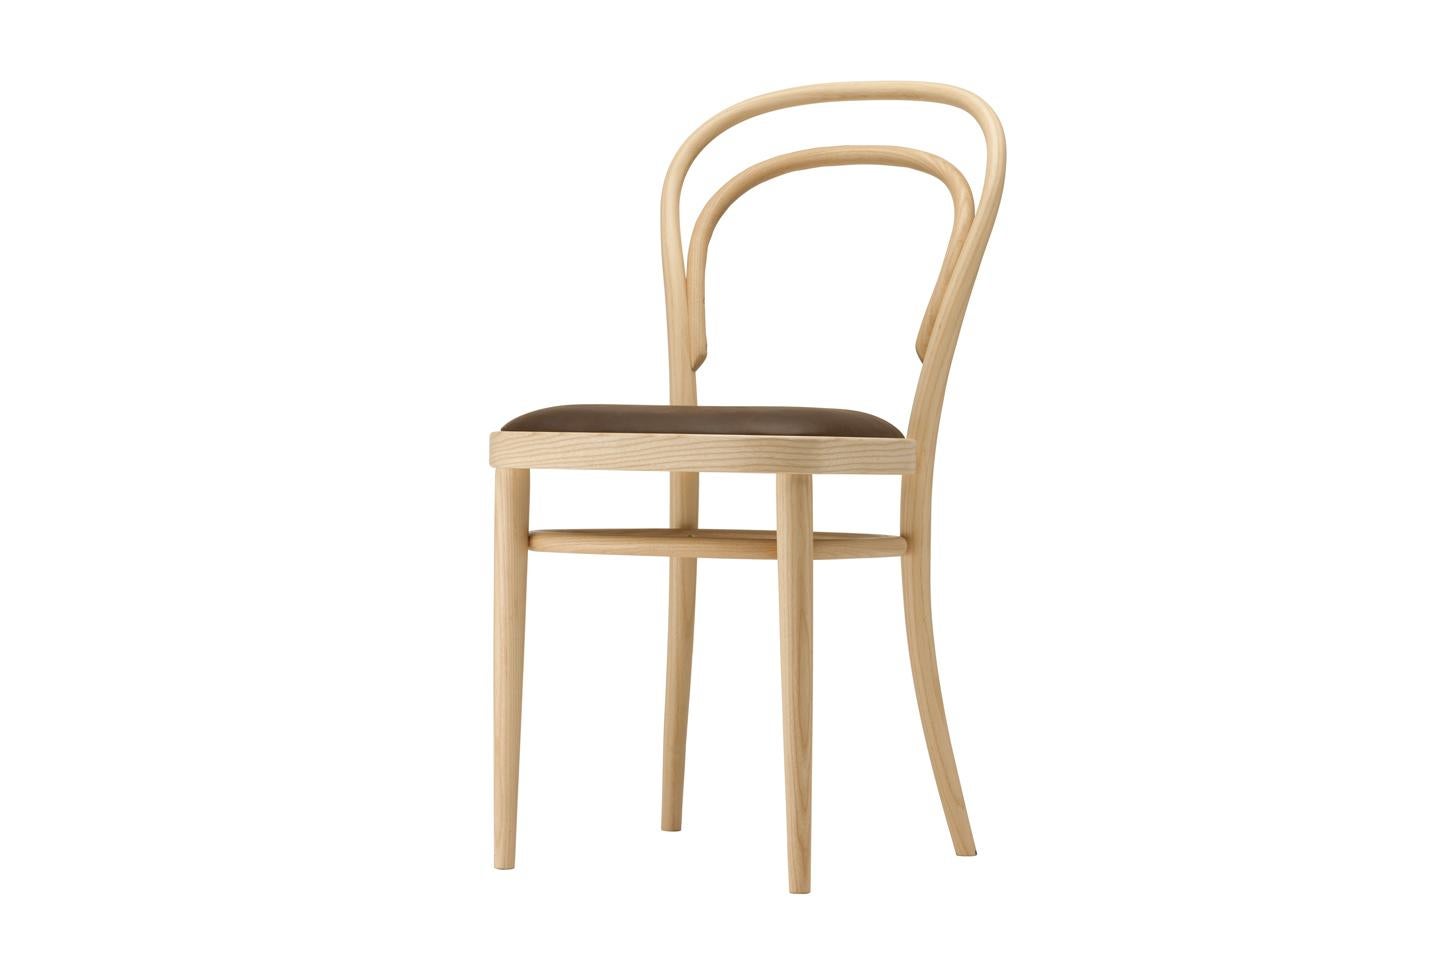 GAMME 214
La célèbre chaise de café est une icône et est considérée comme le produit de masse le plus réussi au monde à ce jour : elle a initié l'histoire du mobilier moderne. La base était une nouvelle technique - le cintrage du bois massif - que